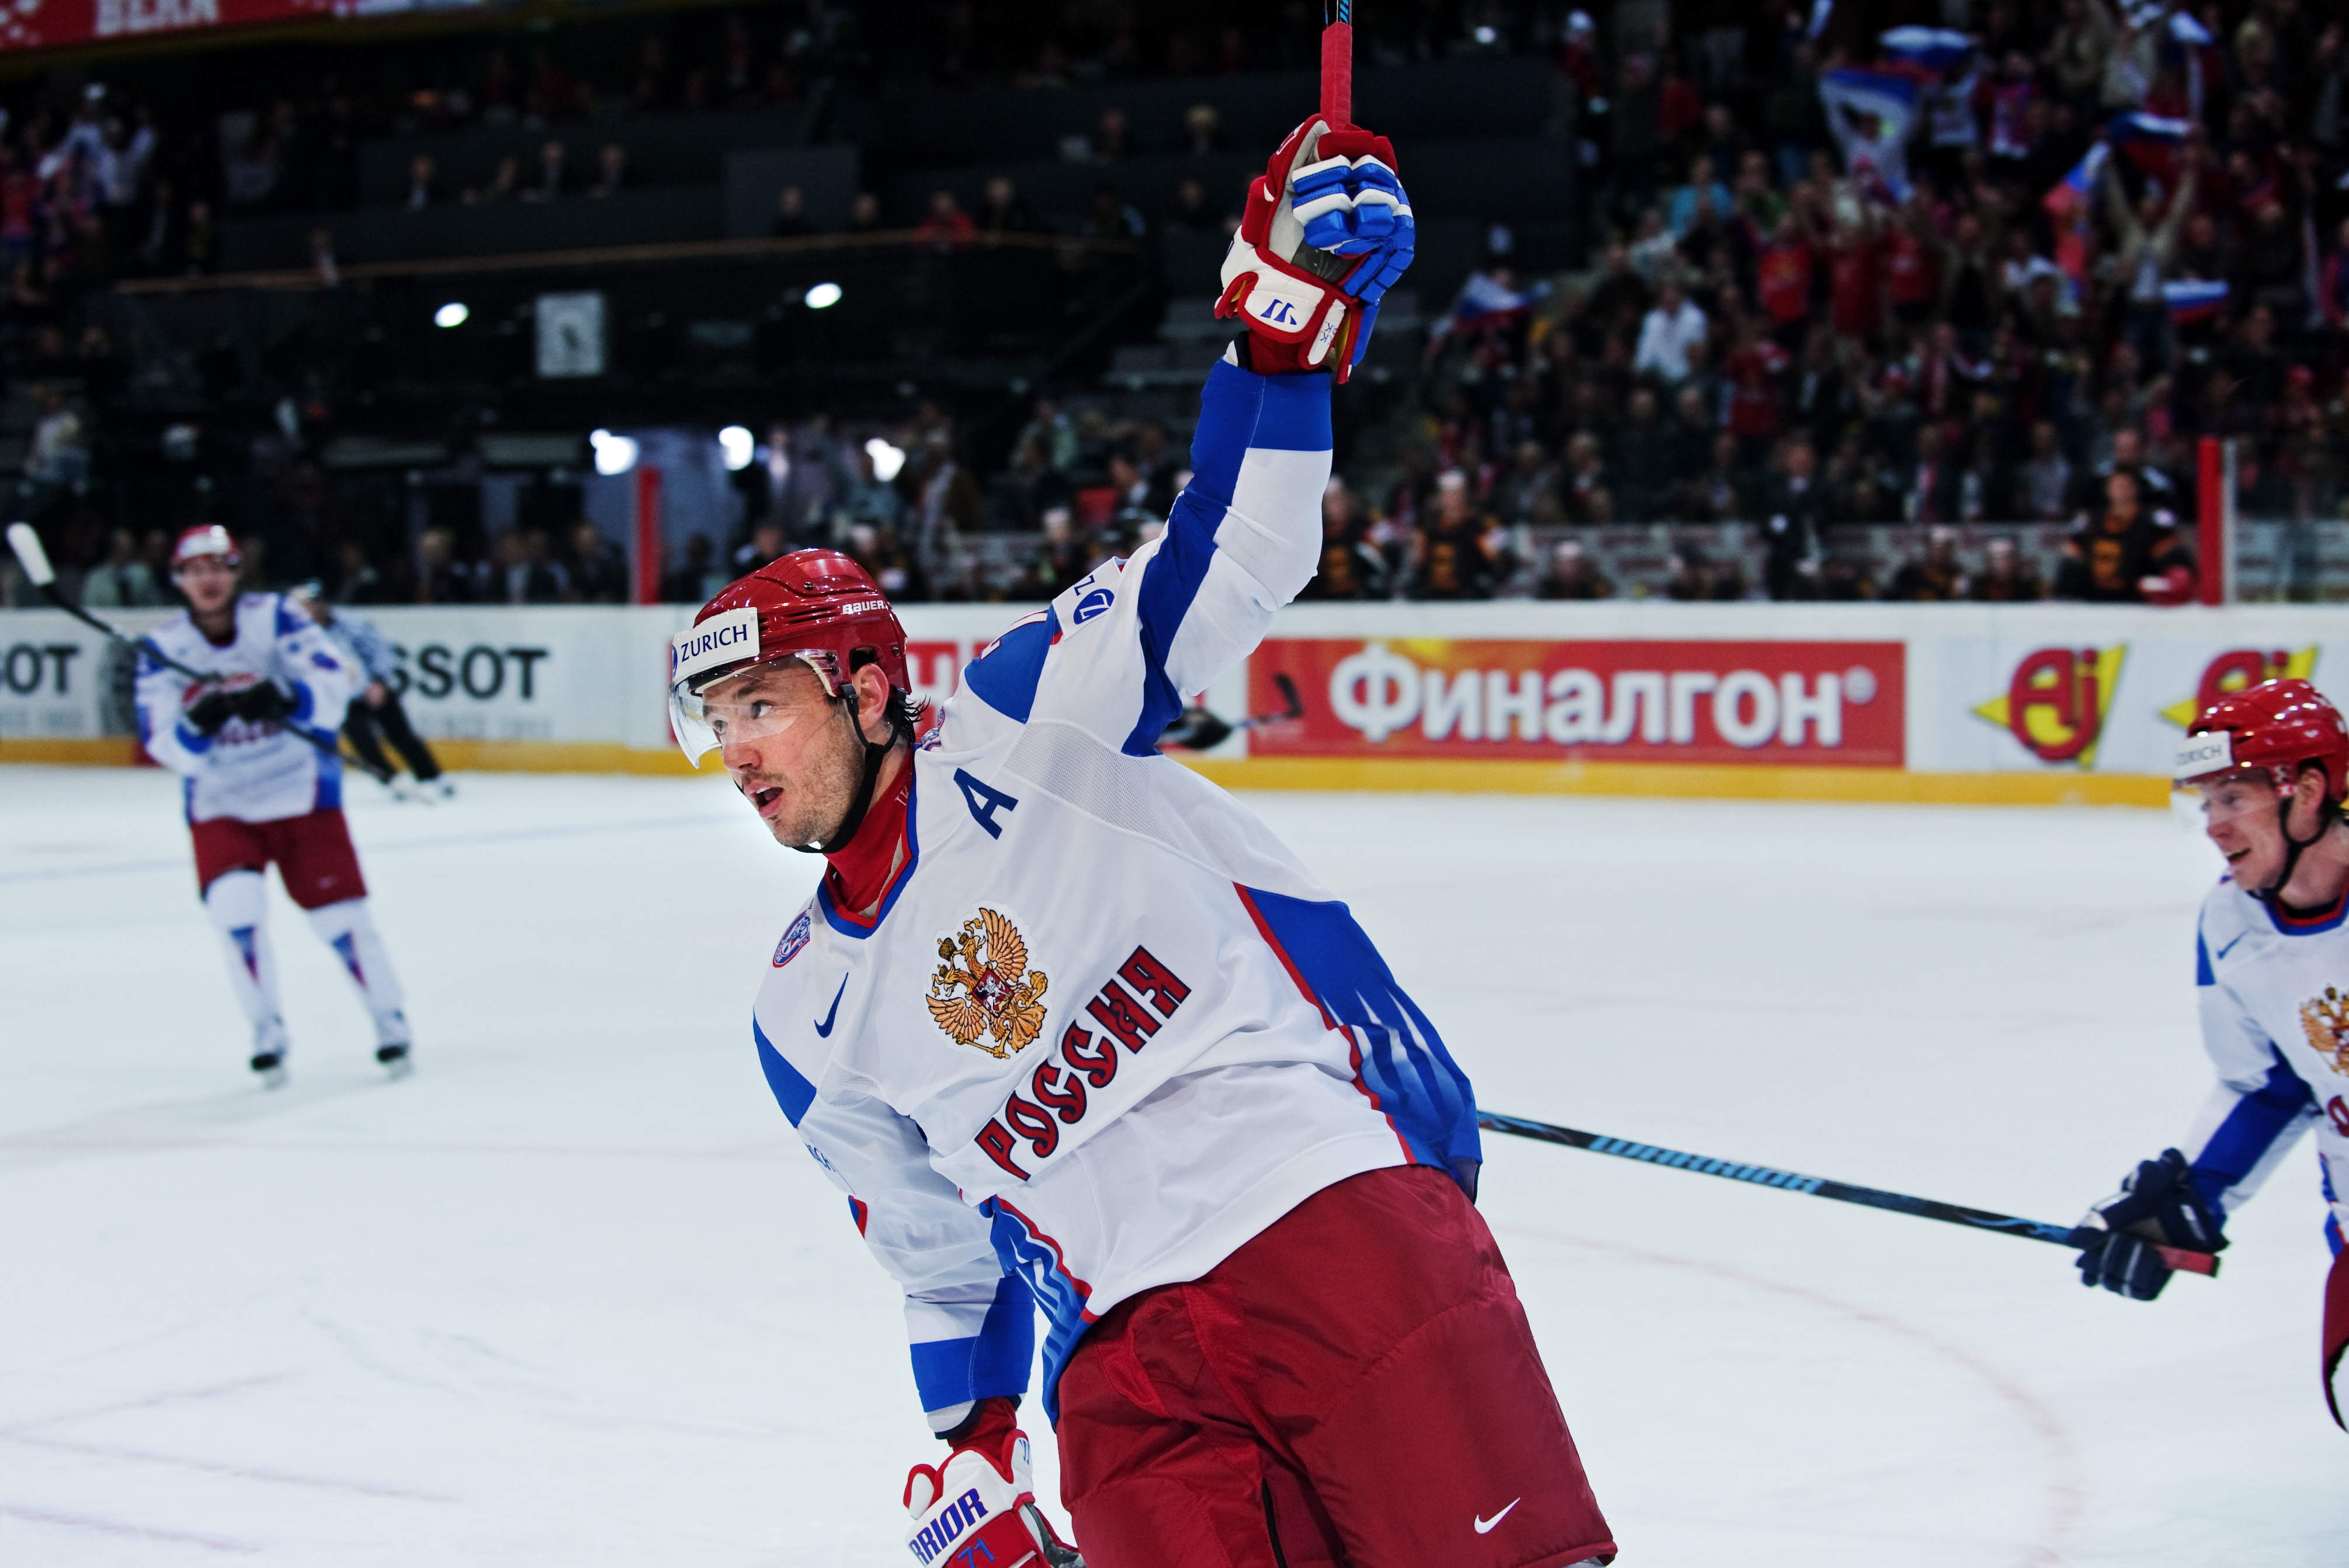 KHL, nhl, Ilya Kovalchuk